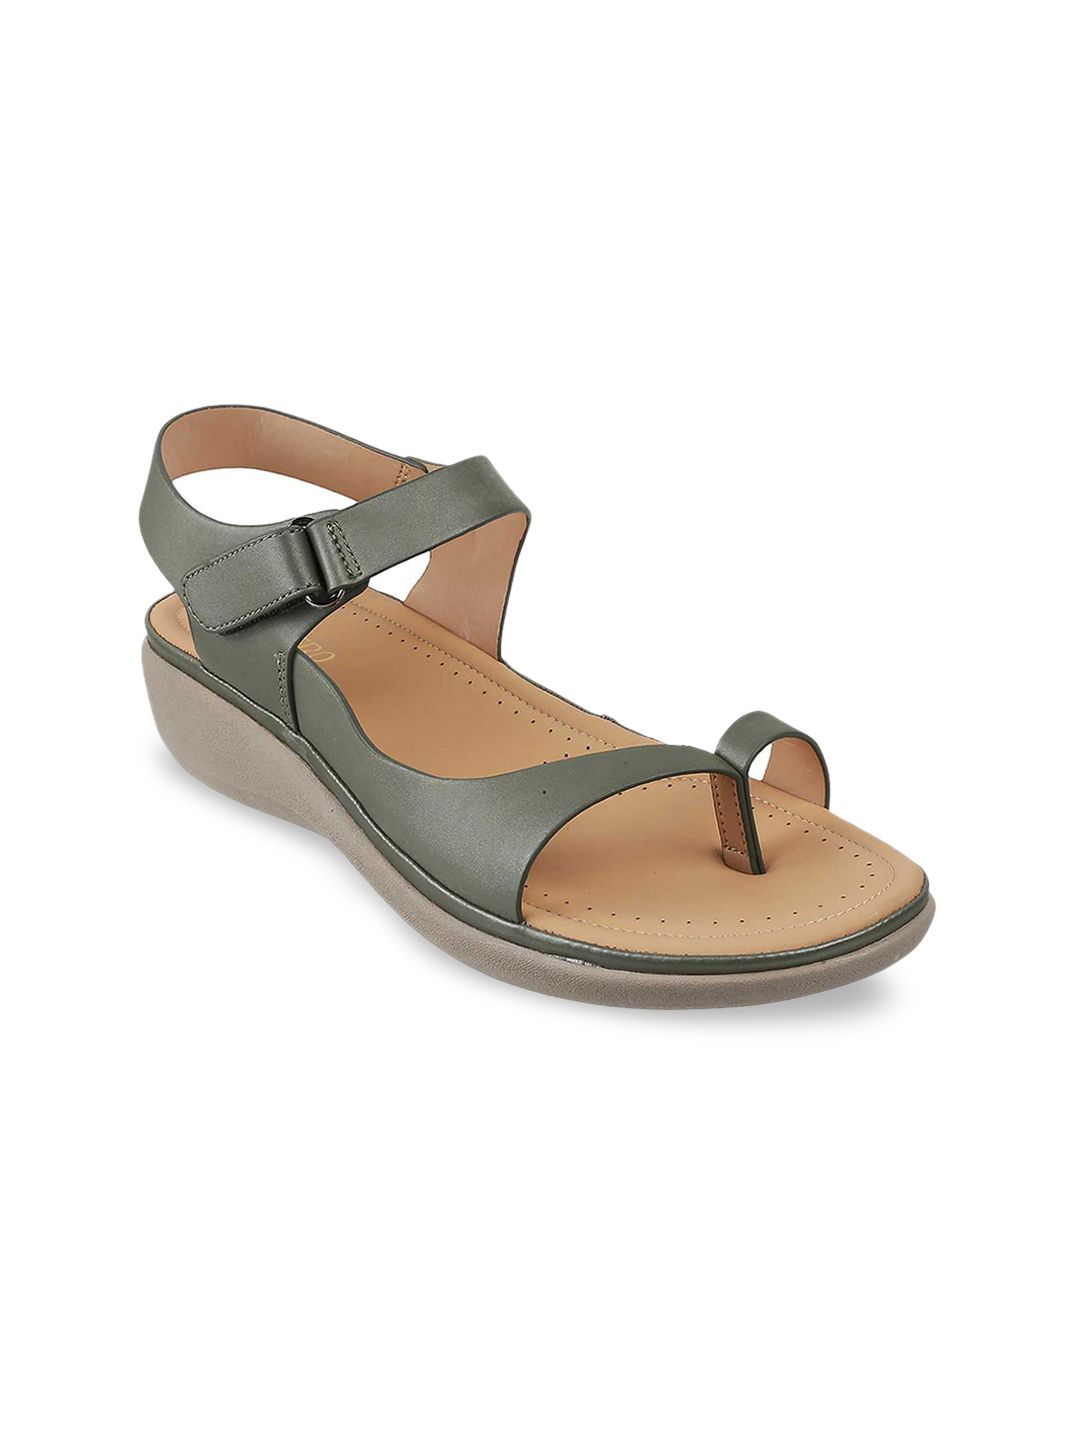 Metro Green & Beige Comfort Sandals Price in India